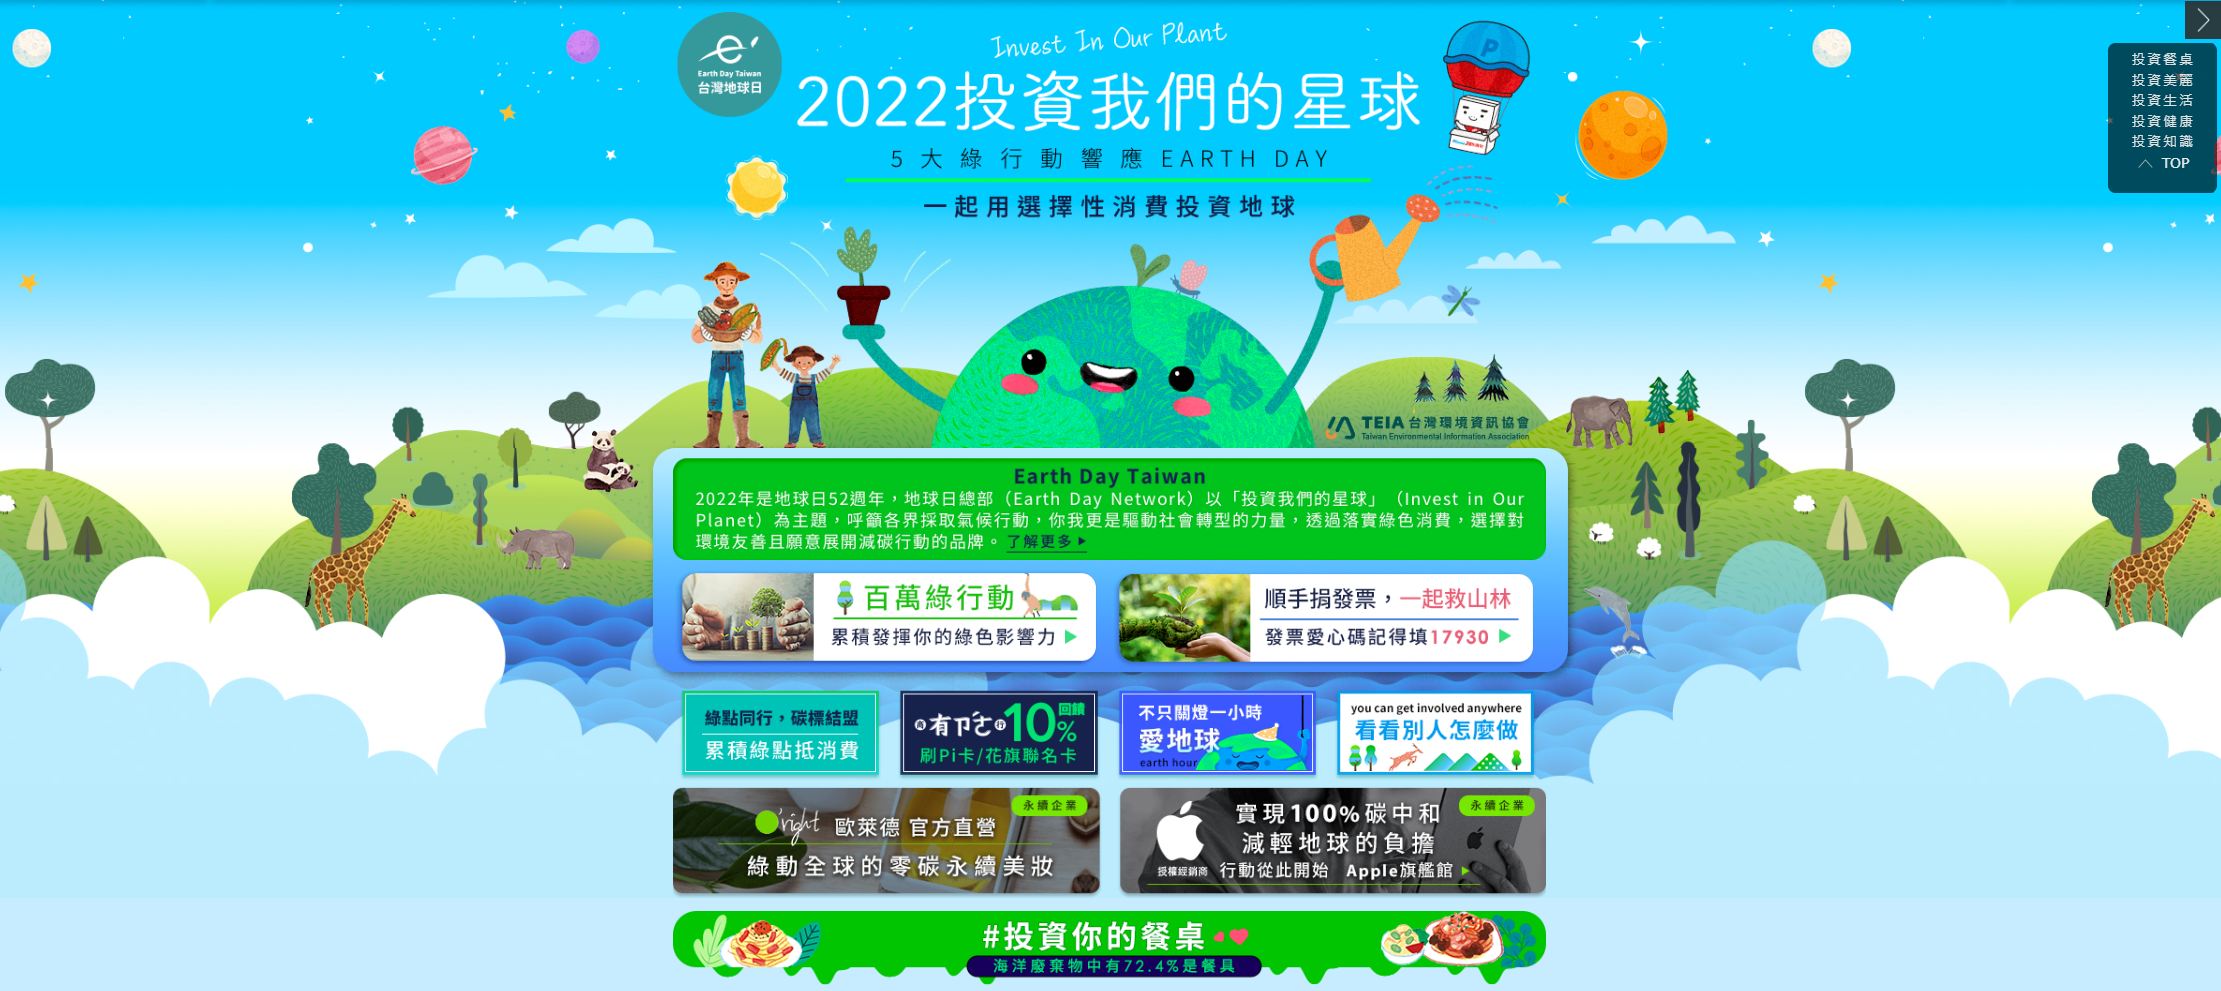 台灣首家綠色電商PChome 24h購物持續推動「綠購政策」  落實ESG永續理念  響應世界地球日  PChome 24h購物綠行動專區  邀請大眾「投資」減碳生活!